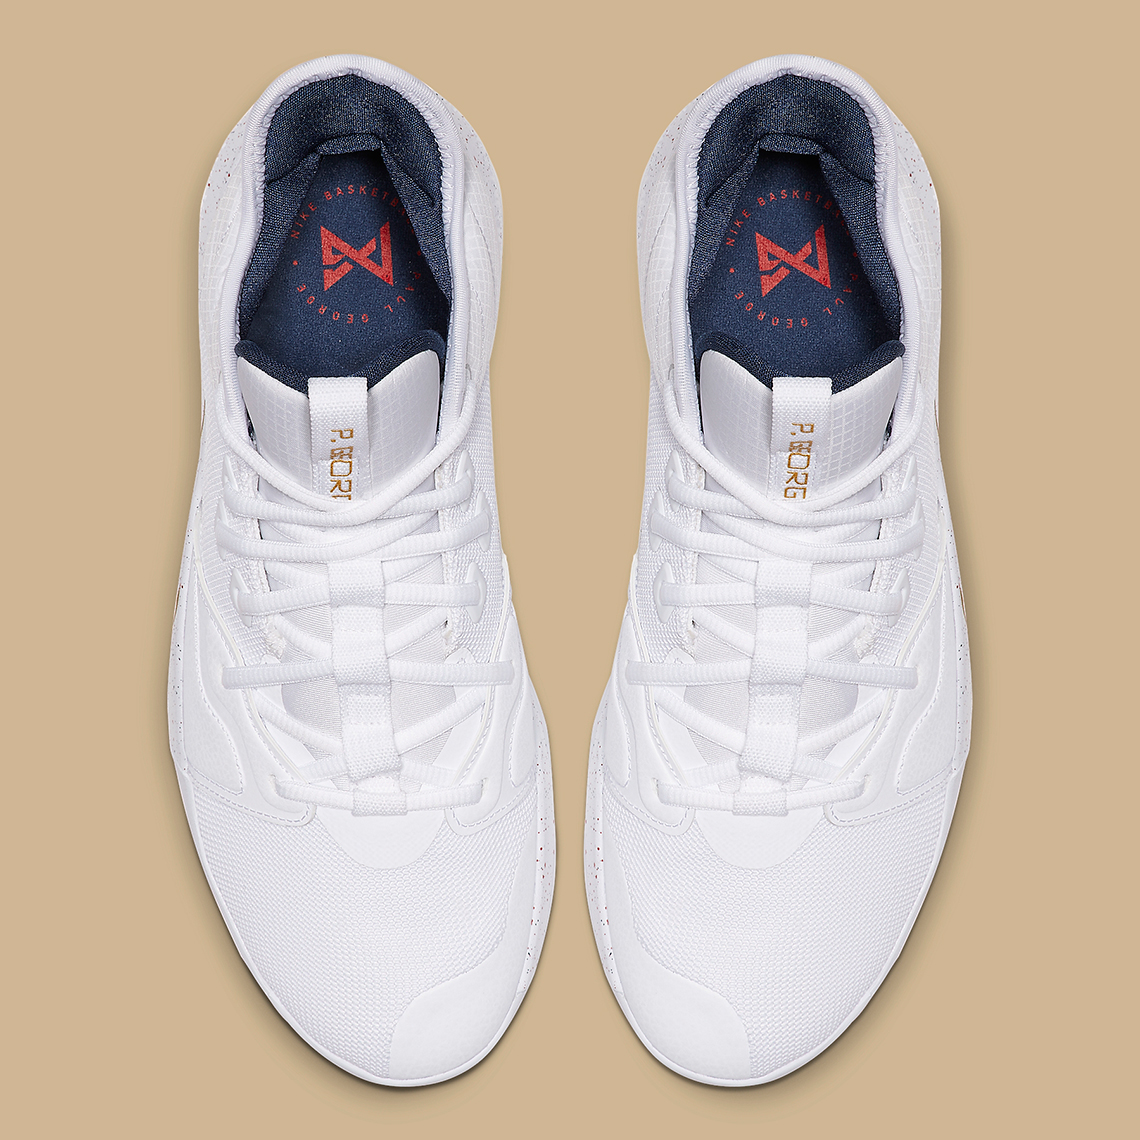 Nike PG 3 White Gold Navy AO2607-100 